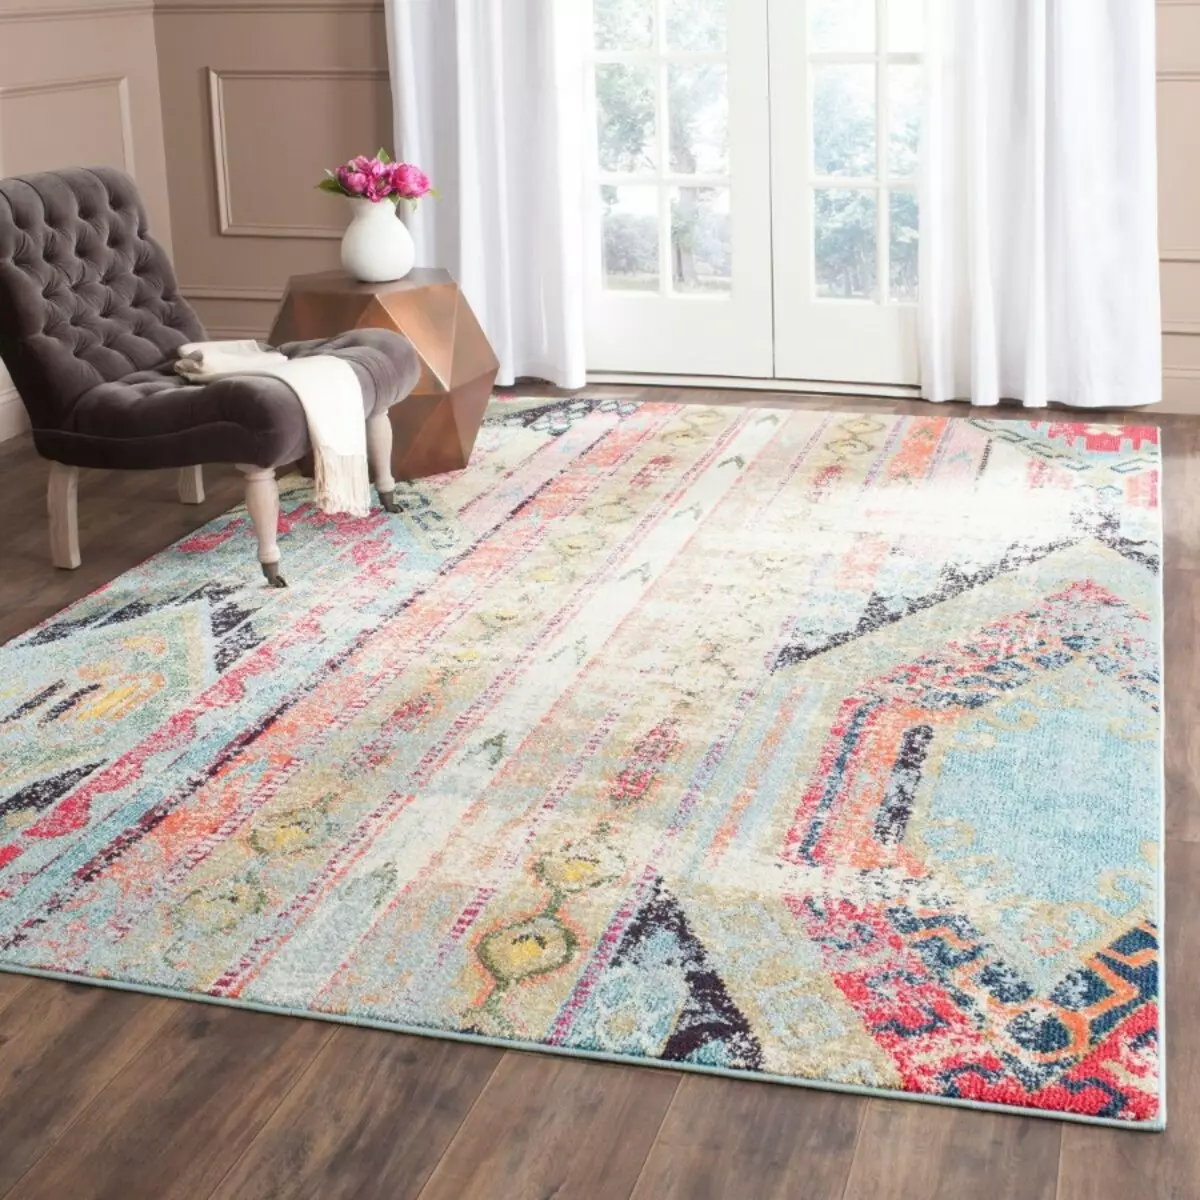 Hoe het tapijt de sfeer in het huis beïnvloedt